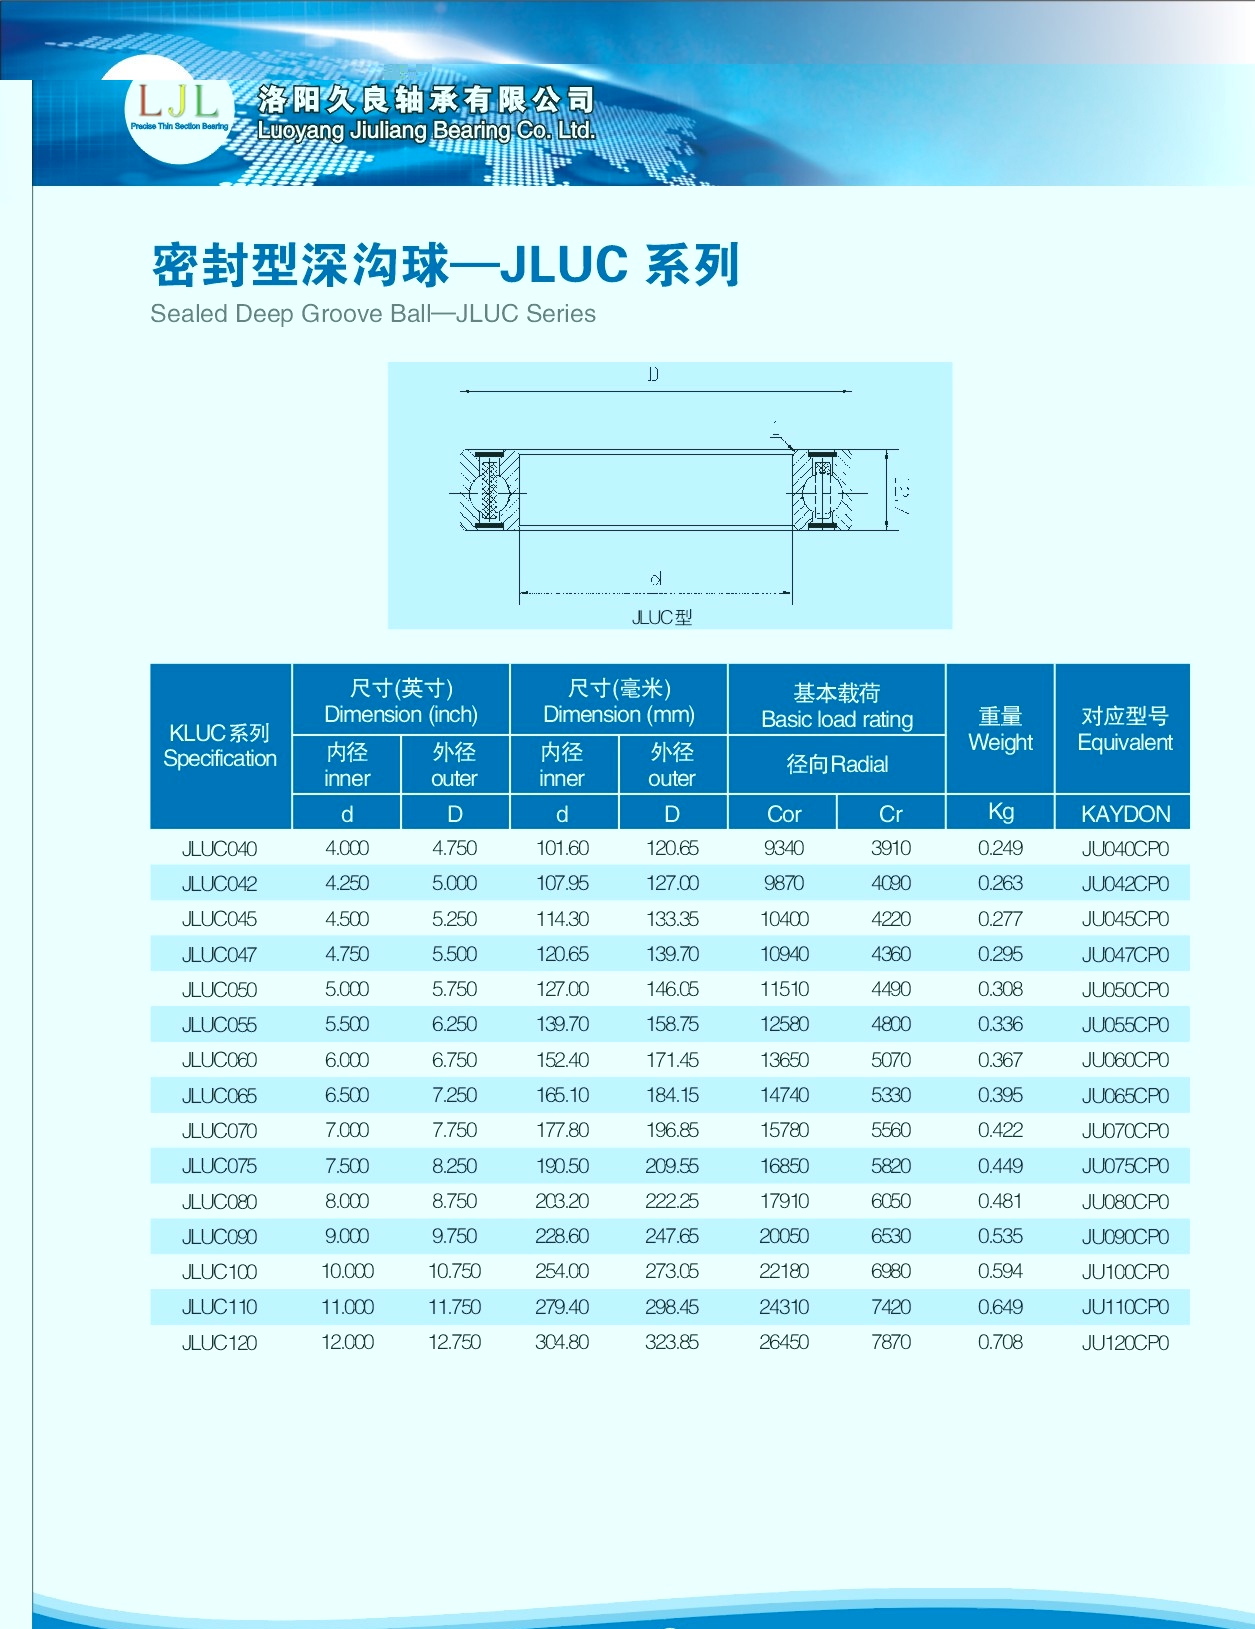 JLUC040	 | 
JLUC042	 | 
JLUC045	 | 
JLUC047	 | 
JLUC050	 | 
JLUC055	 | 
JLUC060	 | 
JLUC065	 | 
JLUC070	 | 
JLUC075	 | 
JLUC080	 | 
JLUC090	 | 
JLUC100	 | 
JLUC110	 | 
JLUC120	 | 